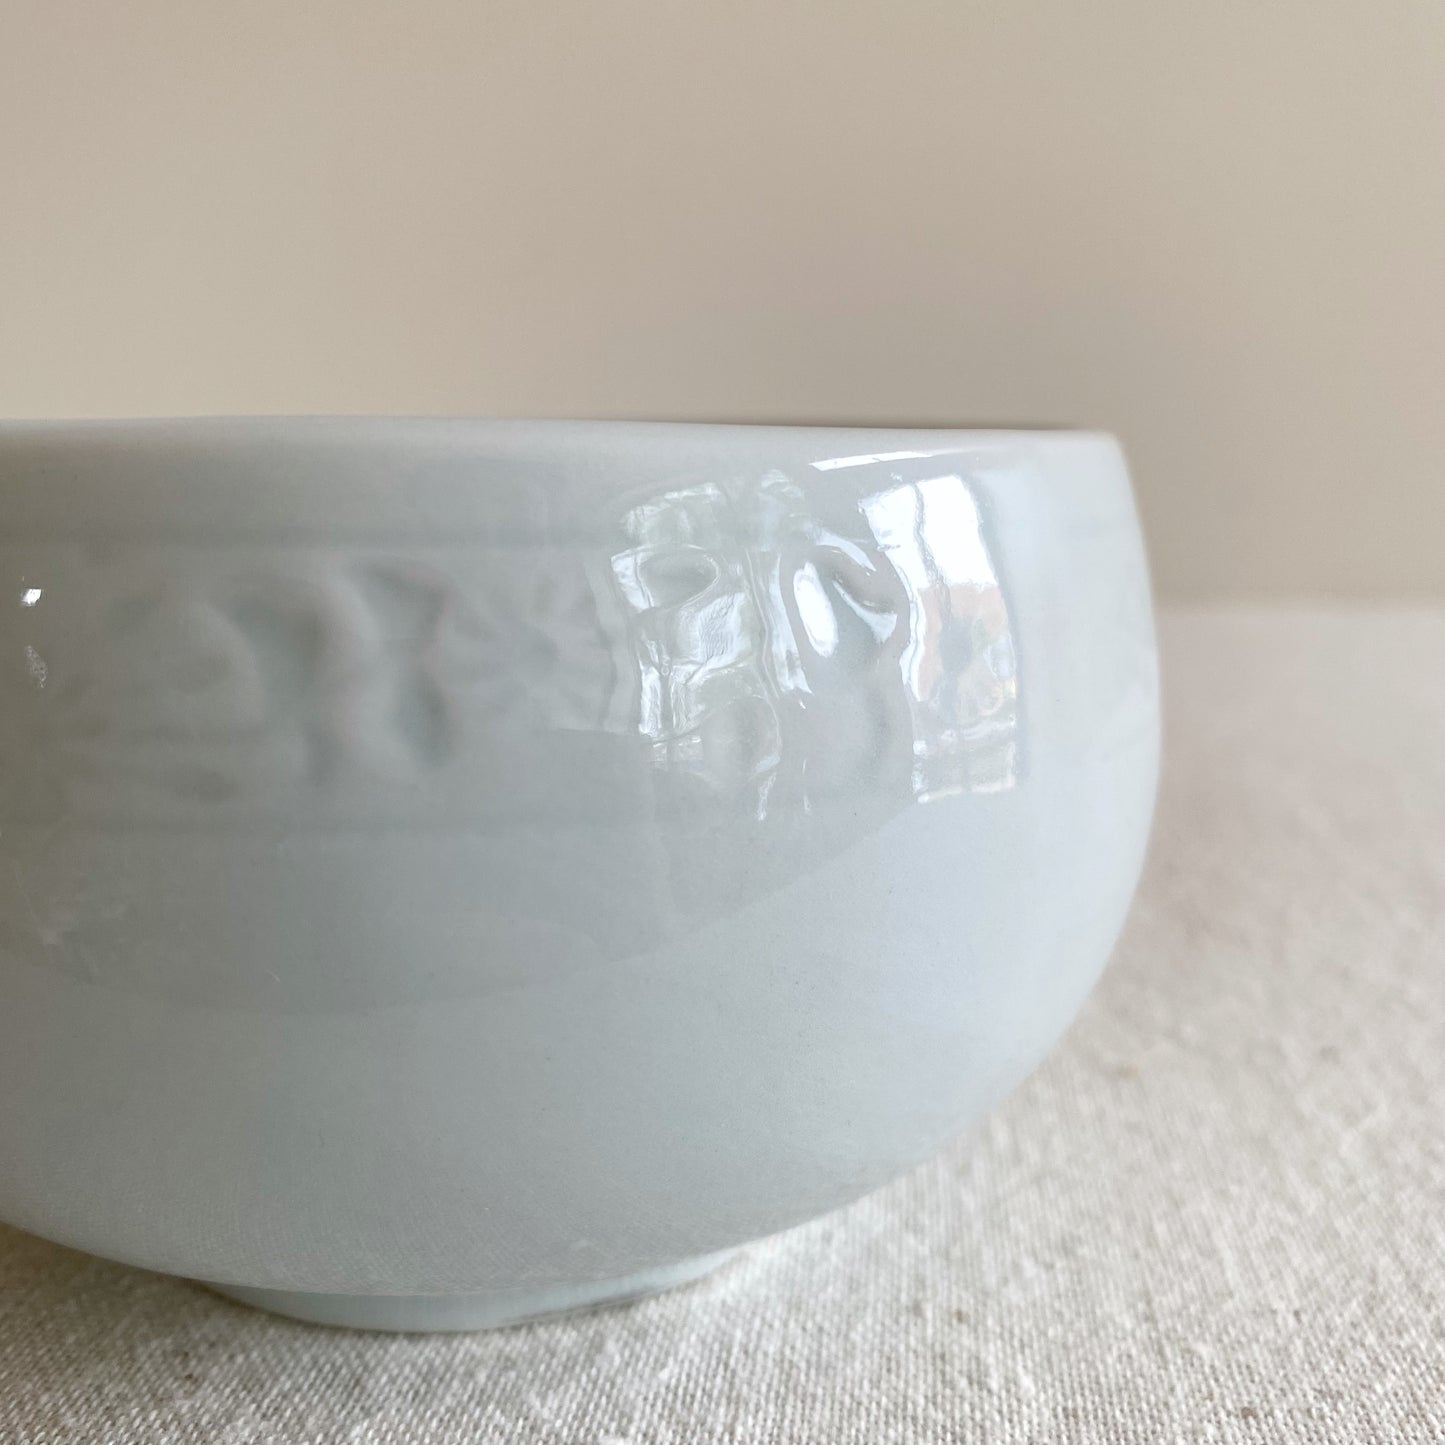 Vintage Porcelain Bowl, Pale Blue